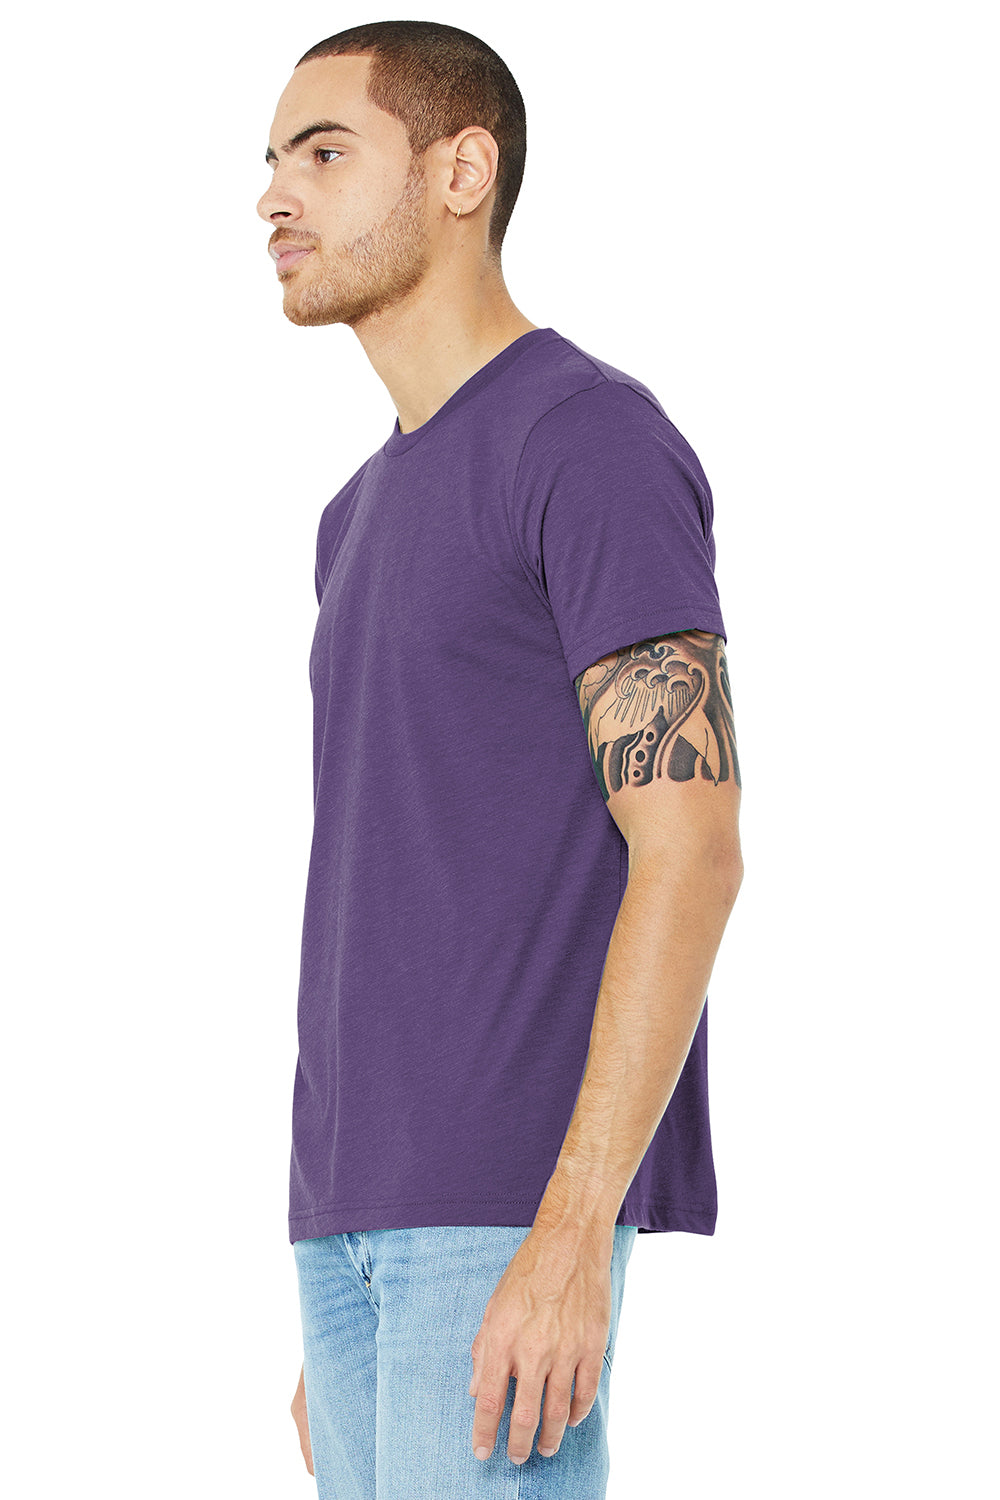 Bella + Canvas BC3413/3413C/3413 Mens Short Sleeve Crewneck T-Shirt Purple Model 3Q